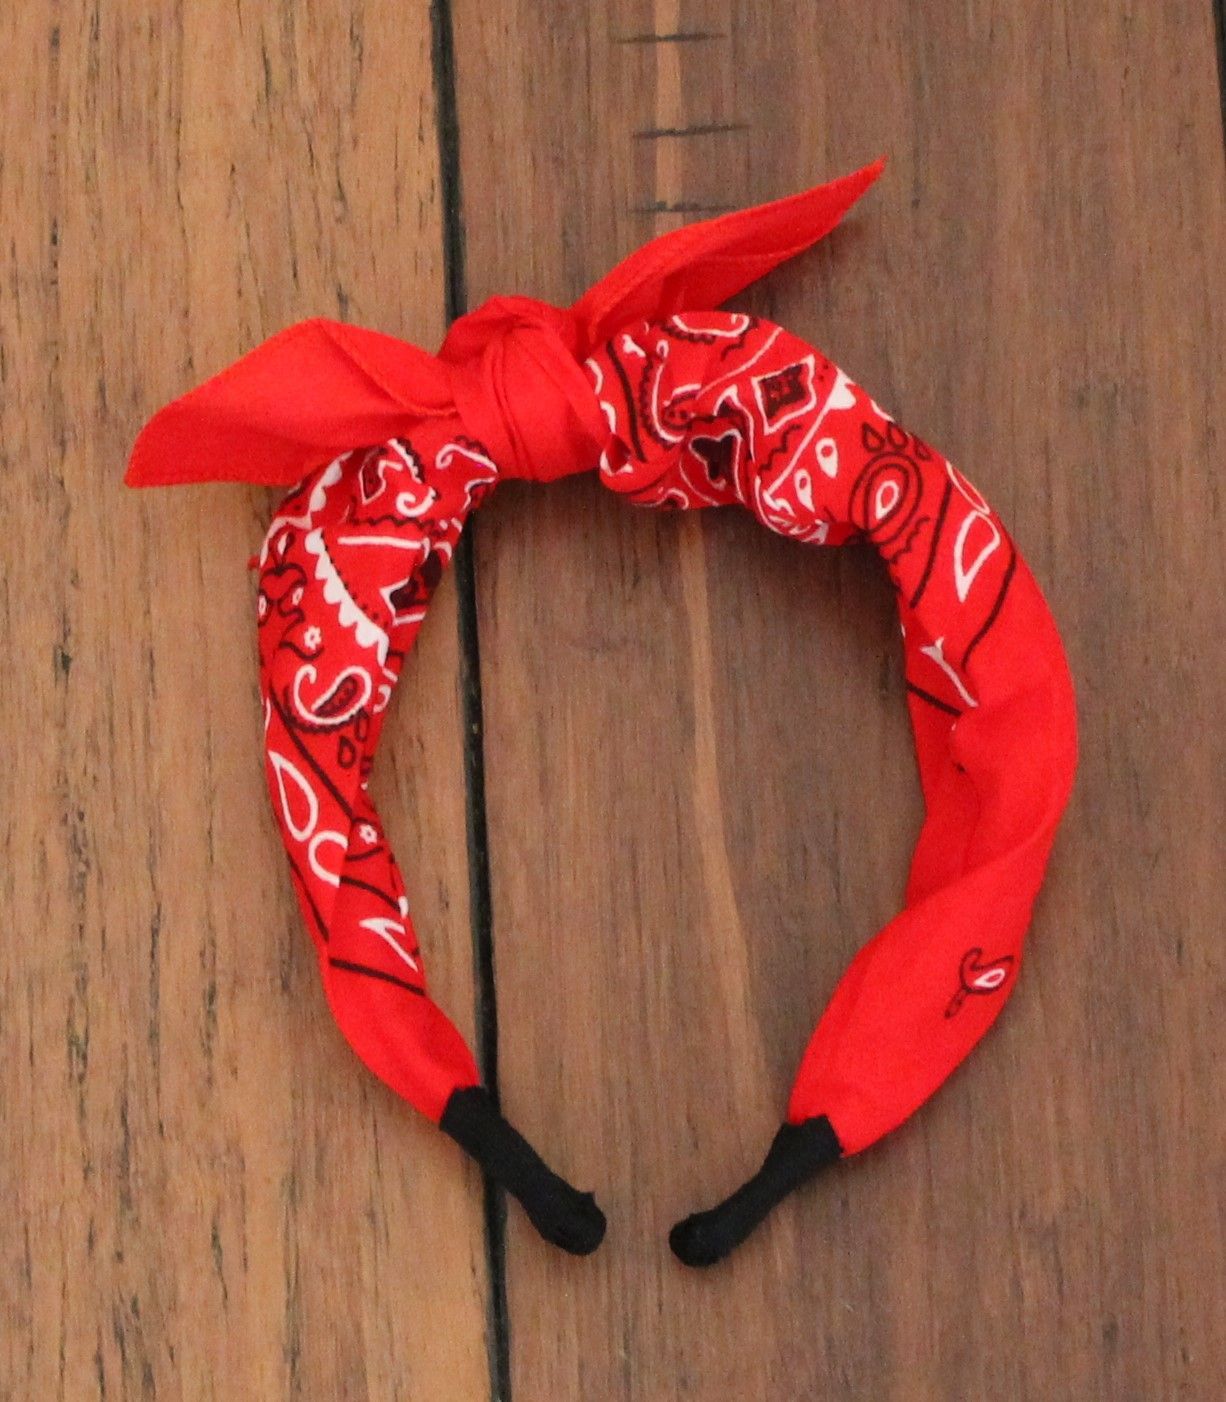 Red Bandana Knot Tie Headband -   17 hairstyles Bandana top knot ideas